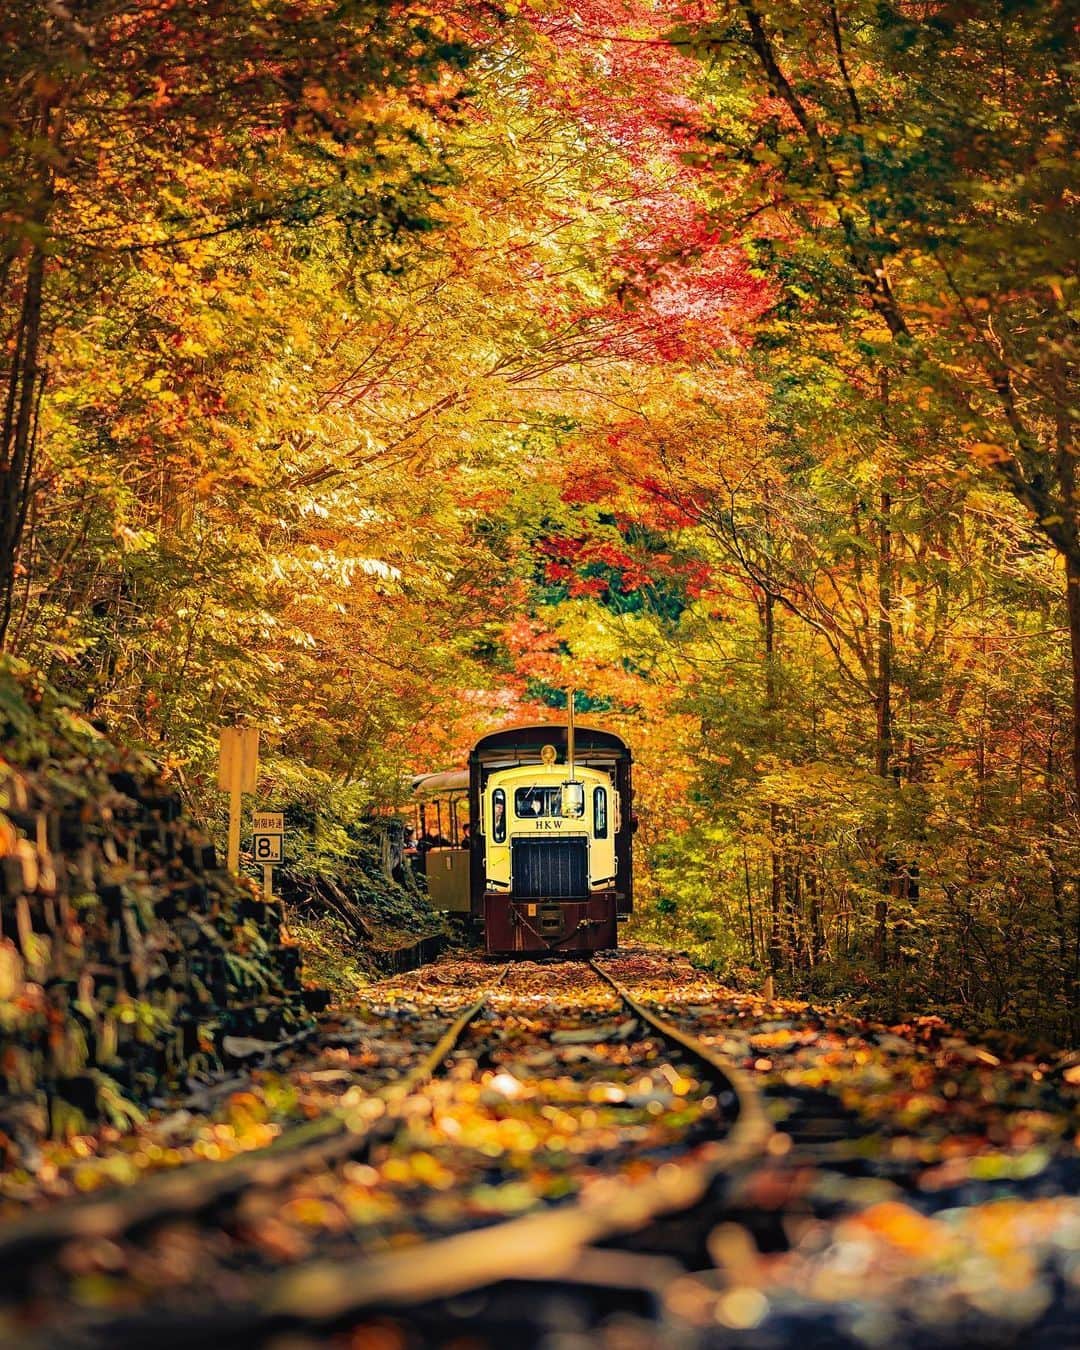 旅行メディア・じゃらん〈公式〉のインスタグラム：「#赤沢森林鉄道 渓流沿いを走る列車から、樹齢300年を超える木曽ヒノキが生い茂る天然林と紅葉を間近で眺められます。例年10月中旬～下旬が見頃。 . . ━━━━━━━━━━━━━━━ 📍 長野県「赤沢森林鉄道」 📷 @sanbonsuge1986 📅 2021.10 ━━━━━━━━━━━━━━━ . . #jalan_travel　をつけていただいた中からpick upしました 素敵なお写真をありがとうございました┈✈︎  .  . ☑ あらかじめ最新情報をご確認の上、お出かけください。 ☑ #jalan_travel をつけて、ぜひ今までの旅行先の思い出写真を投稿してください。このアカウントでご紹介させていただきます。(じゃらんニュースでも紹介される可能性があります） . . . . . . #いつか行きたい #じゃらん #観光 #観光地 #観光スポット #旅行 #旅行好きな人と繋がりたい #旅行好き  #japantravelphoto #japantrip #japantravel #国内旅行 #絶景 #絶景スポット #誰かに見せたい景色 #誰かに見せたい風景 #長野 #長野観光 #長野旅行 #nagano」